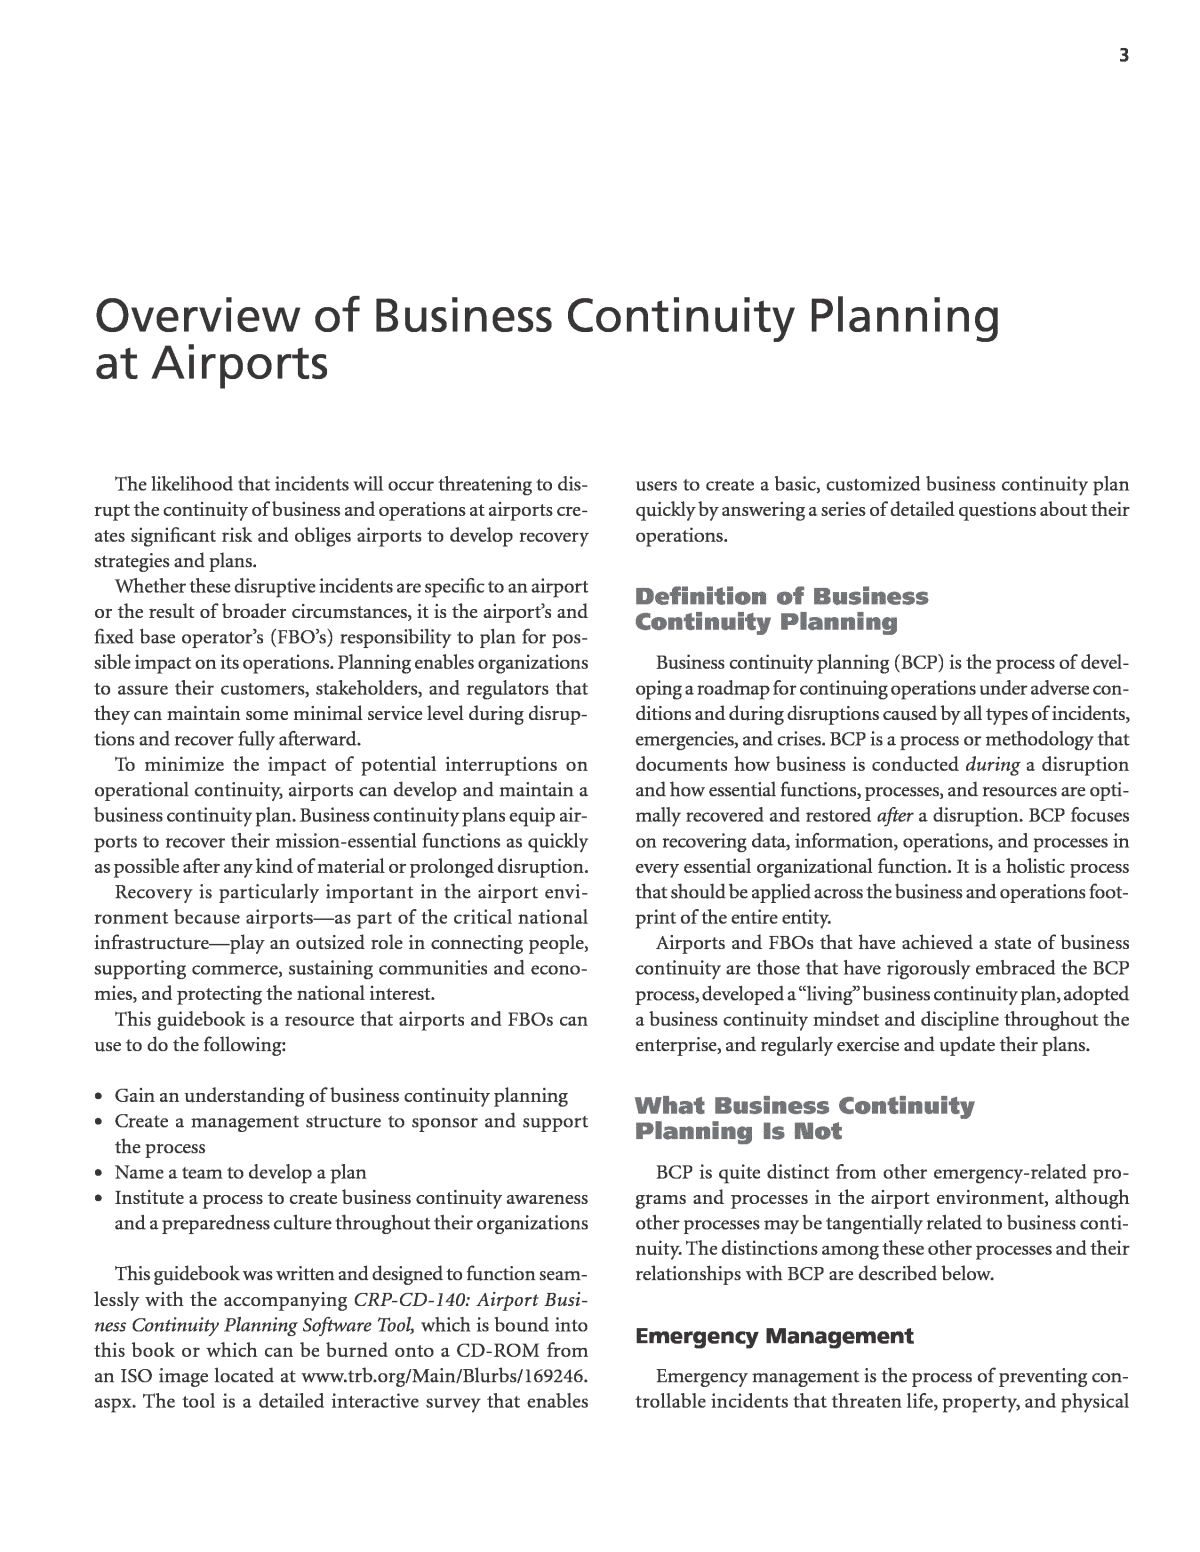 Airport Planning & Regulation